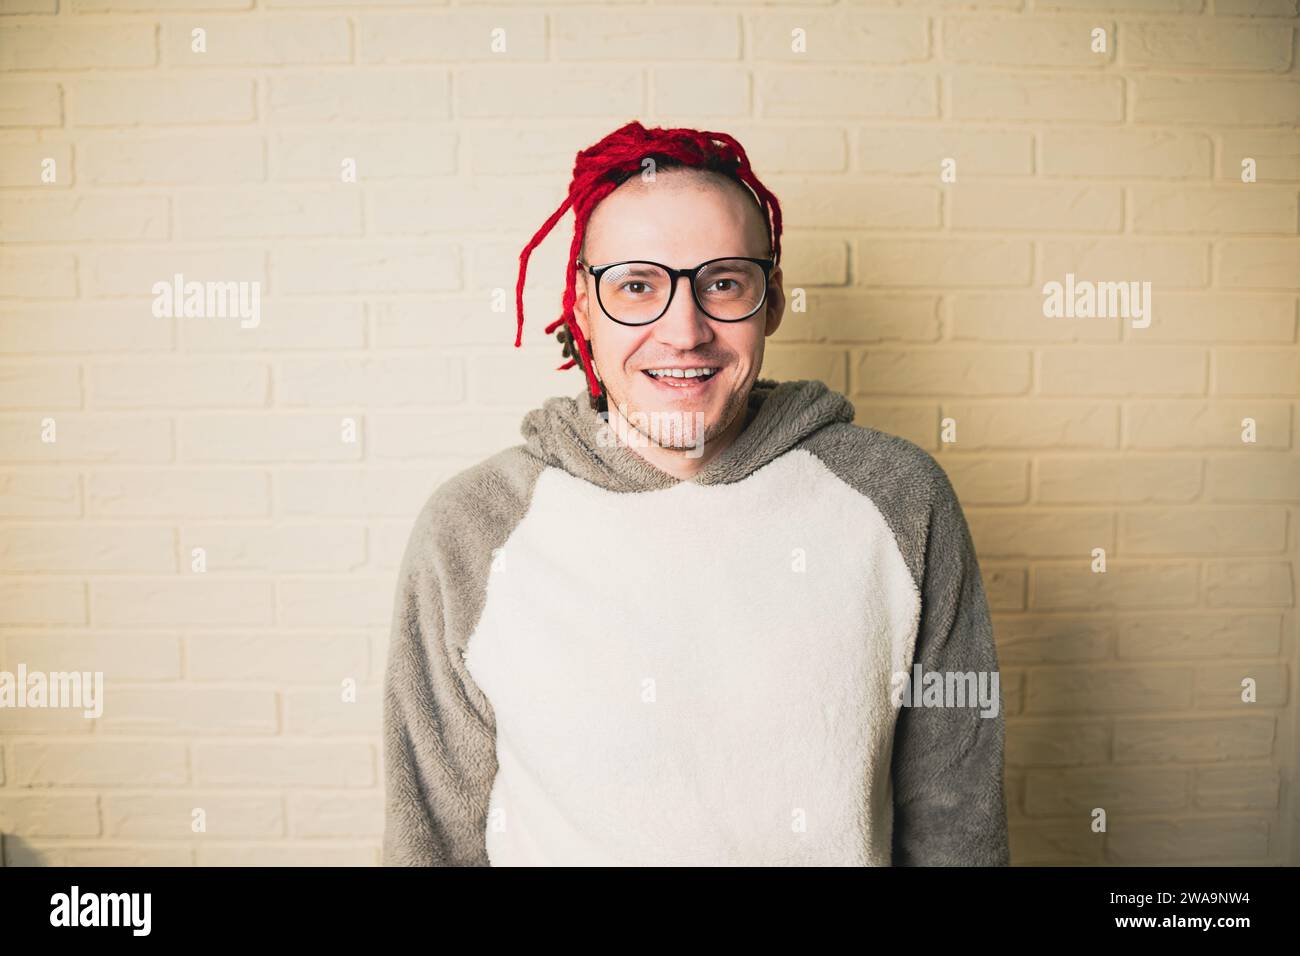 jeune homme hipster attrayant avec des dreadlocks rouges dans des lunettes et un pull blanc sur le fond d'un mur de briques. Banque D'Images